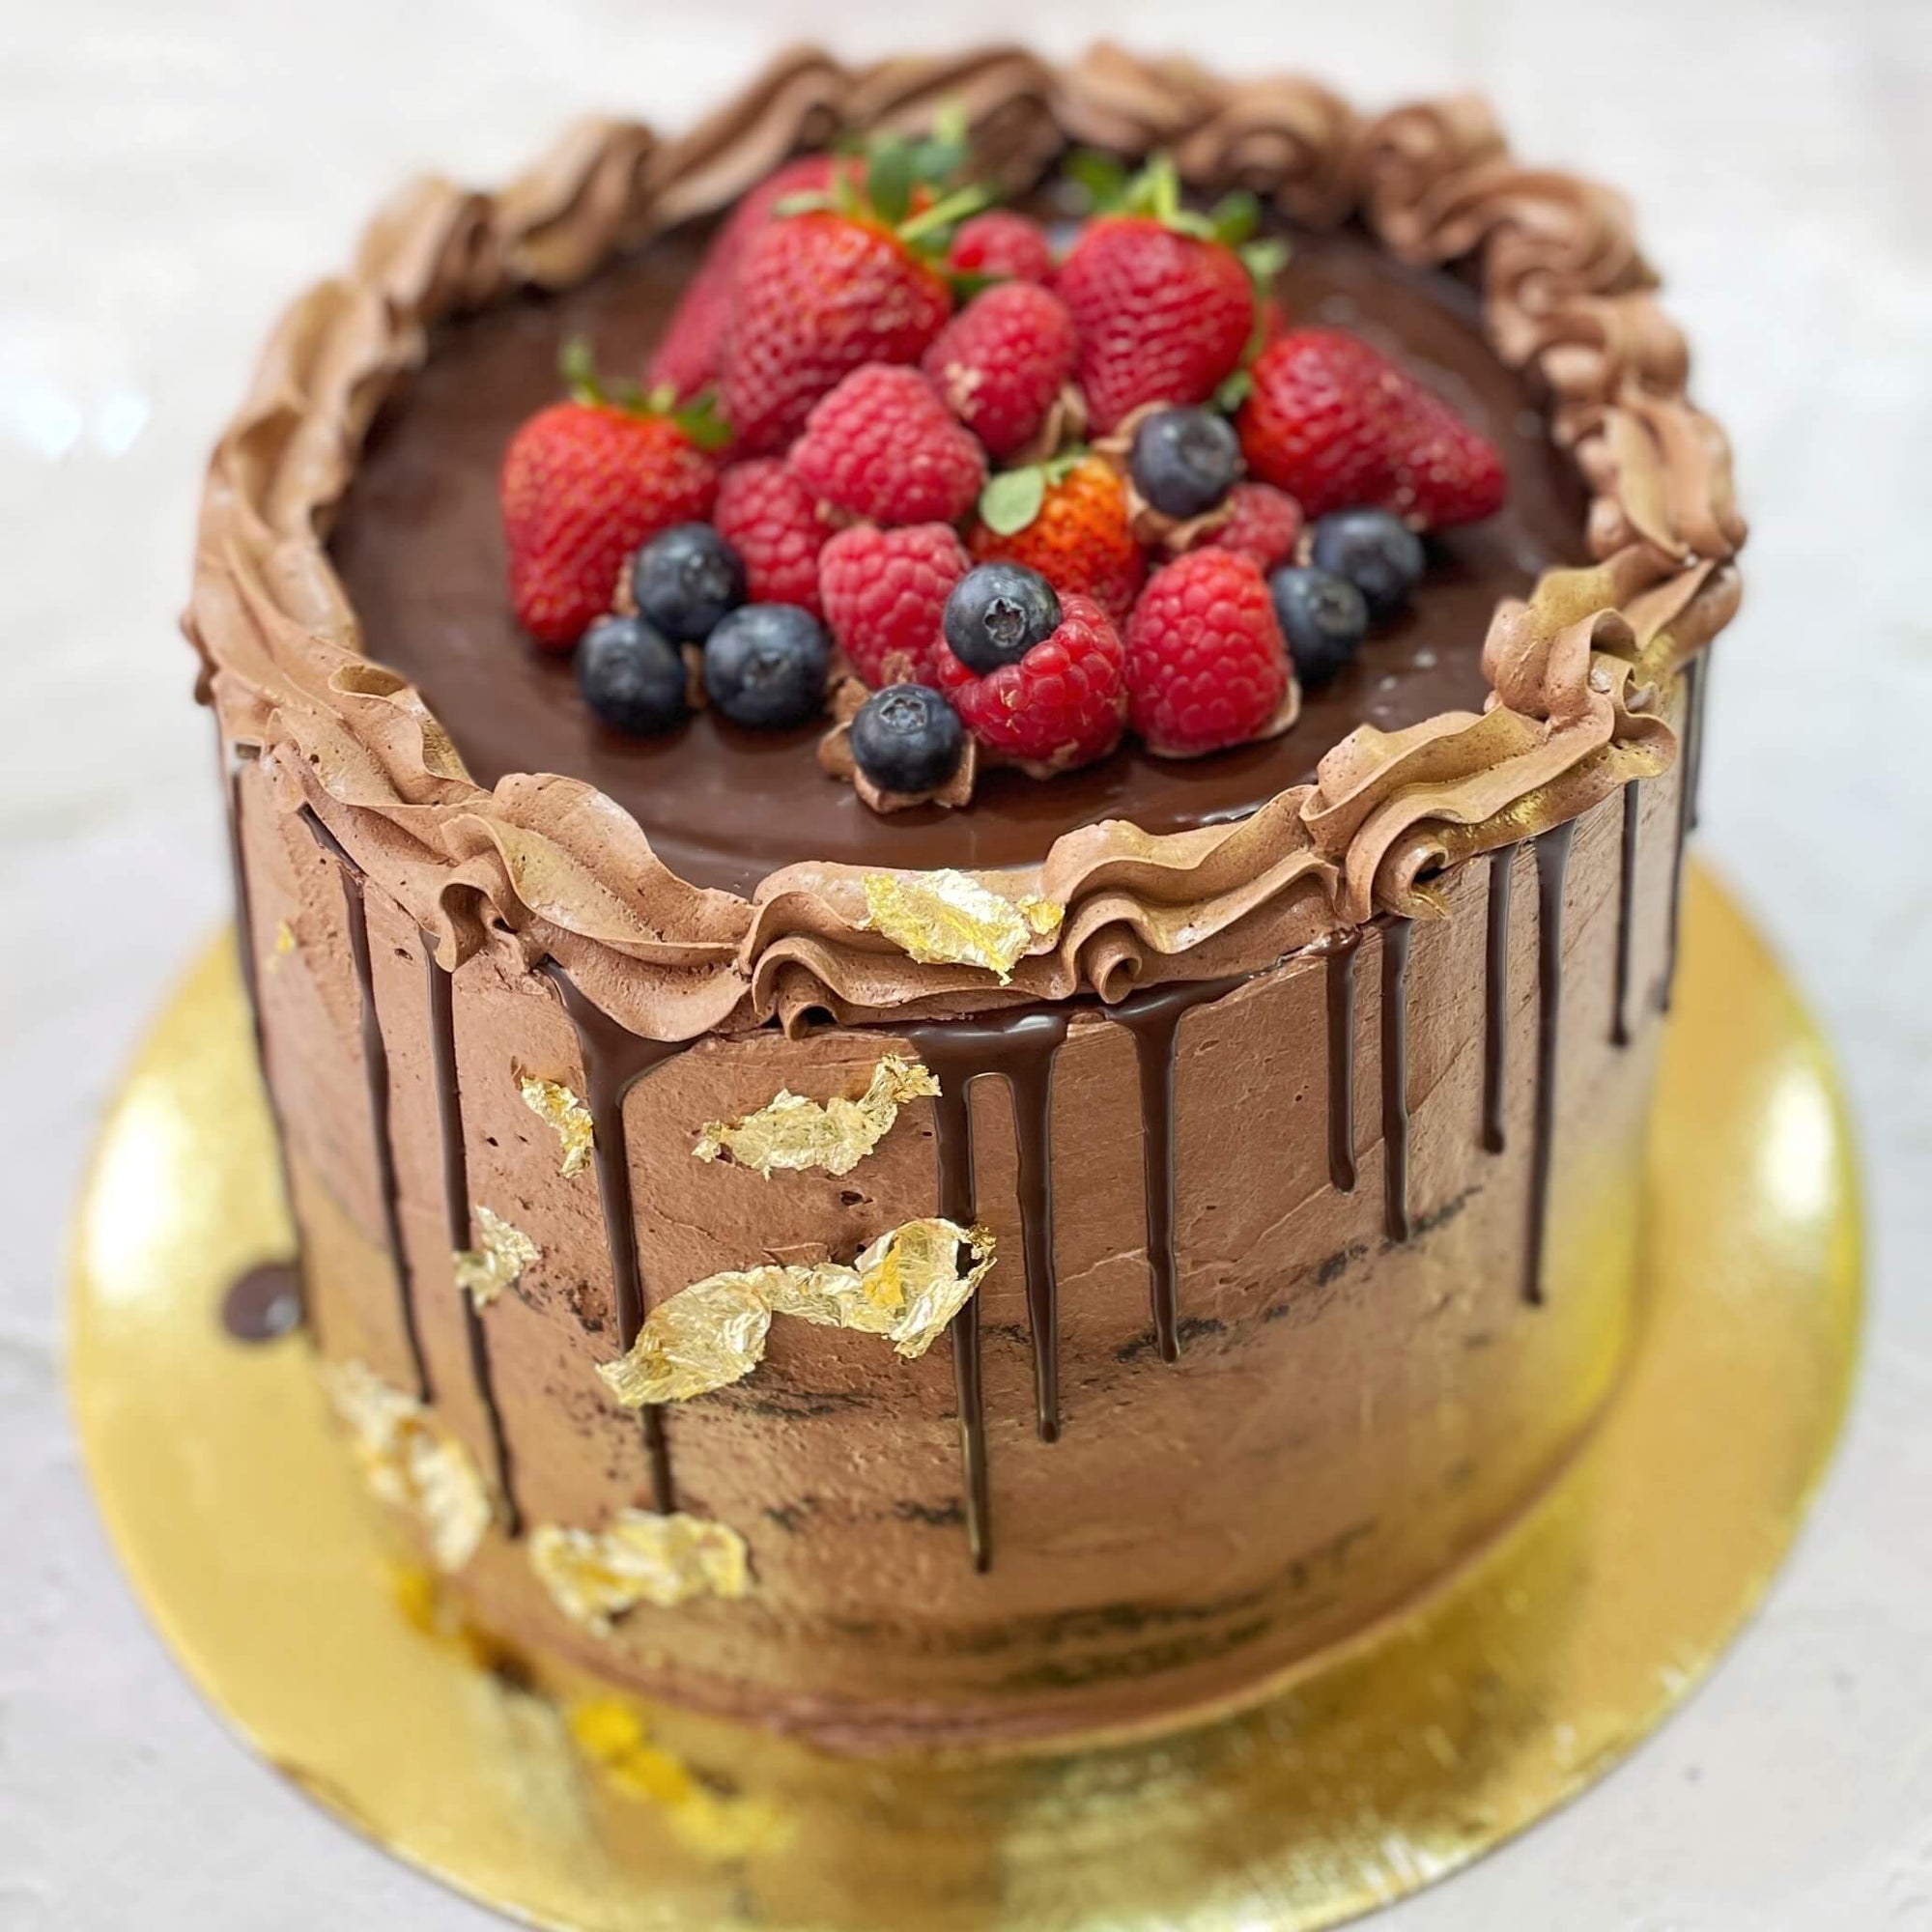 Dairy-free Chocolate Cake